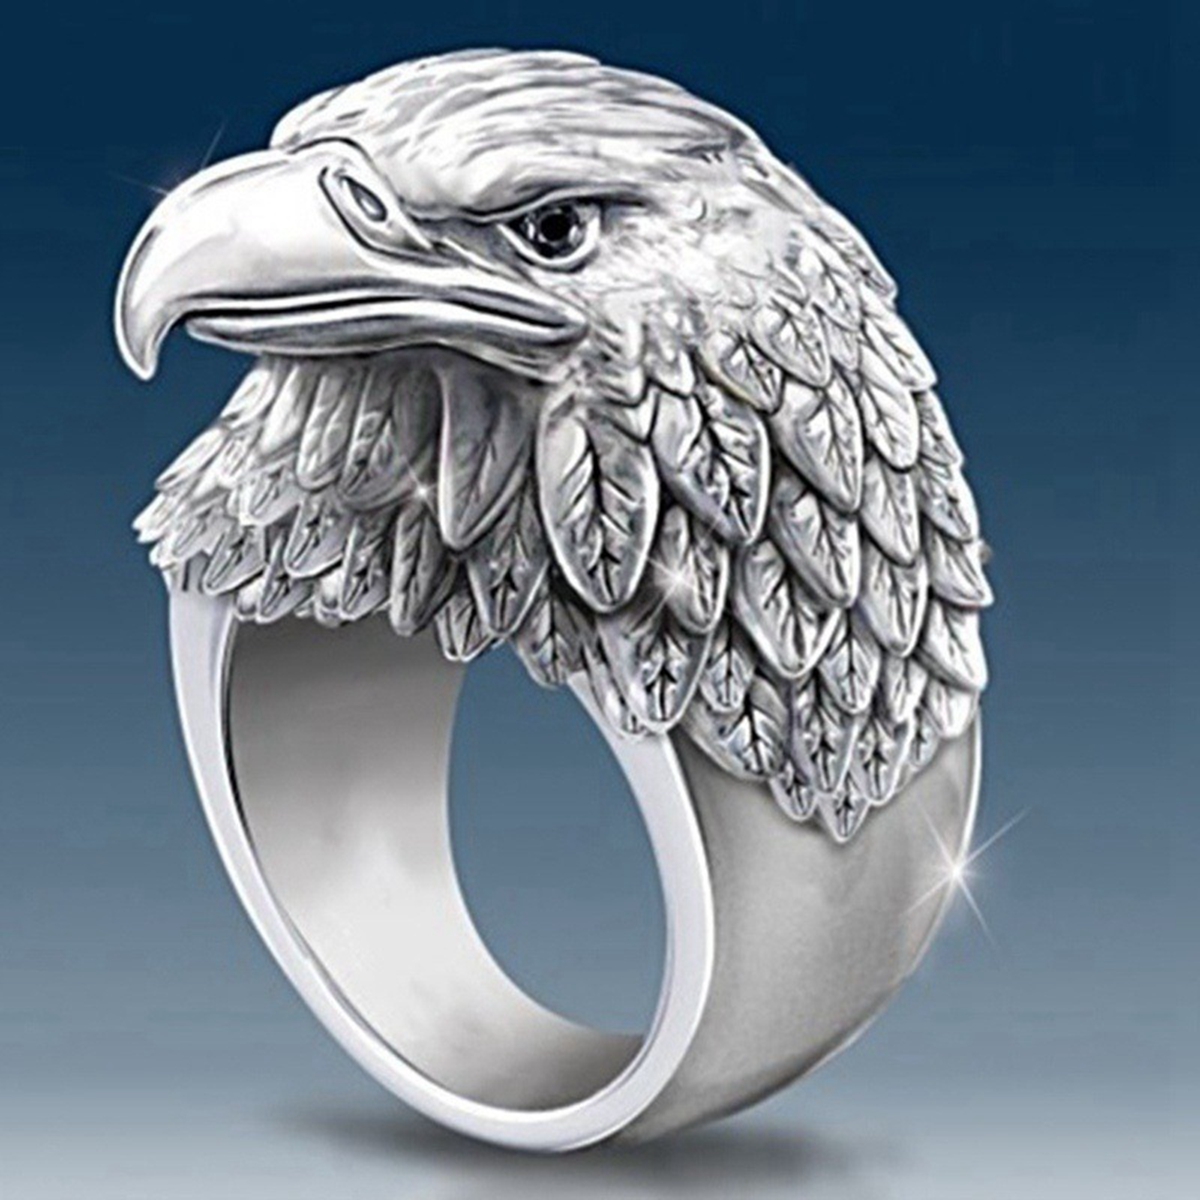 10 sztuk gorąca sprzedaż moda stop orzeł pierścień nadaje się do europejskich i amerykańskich mężczyzn urodziny akcesoria imprezowe pierścionki rozmiar 7-13 G-130